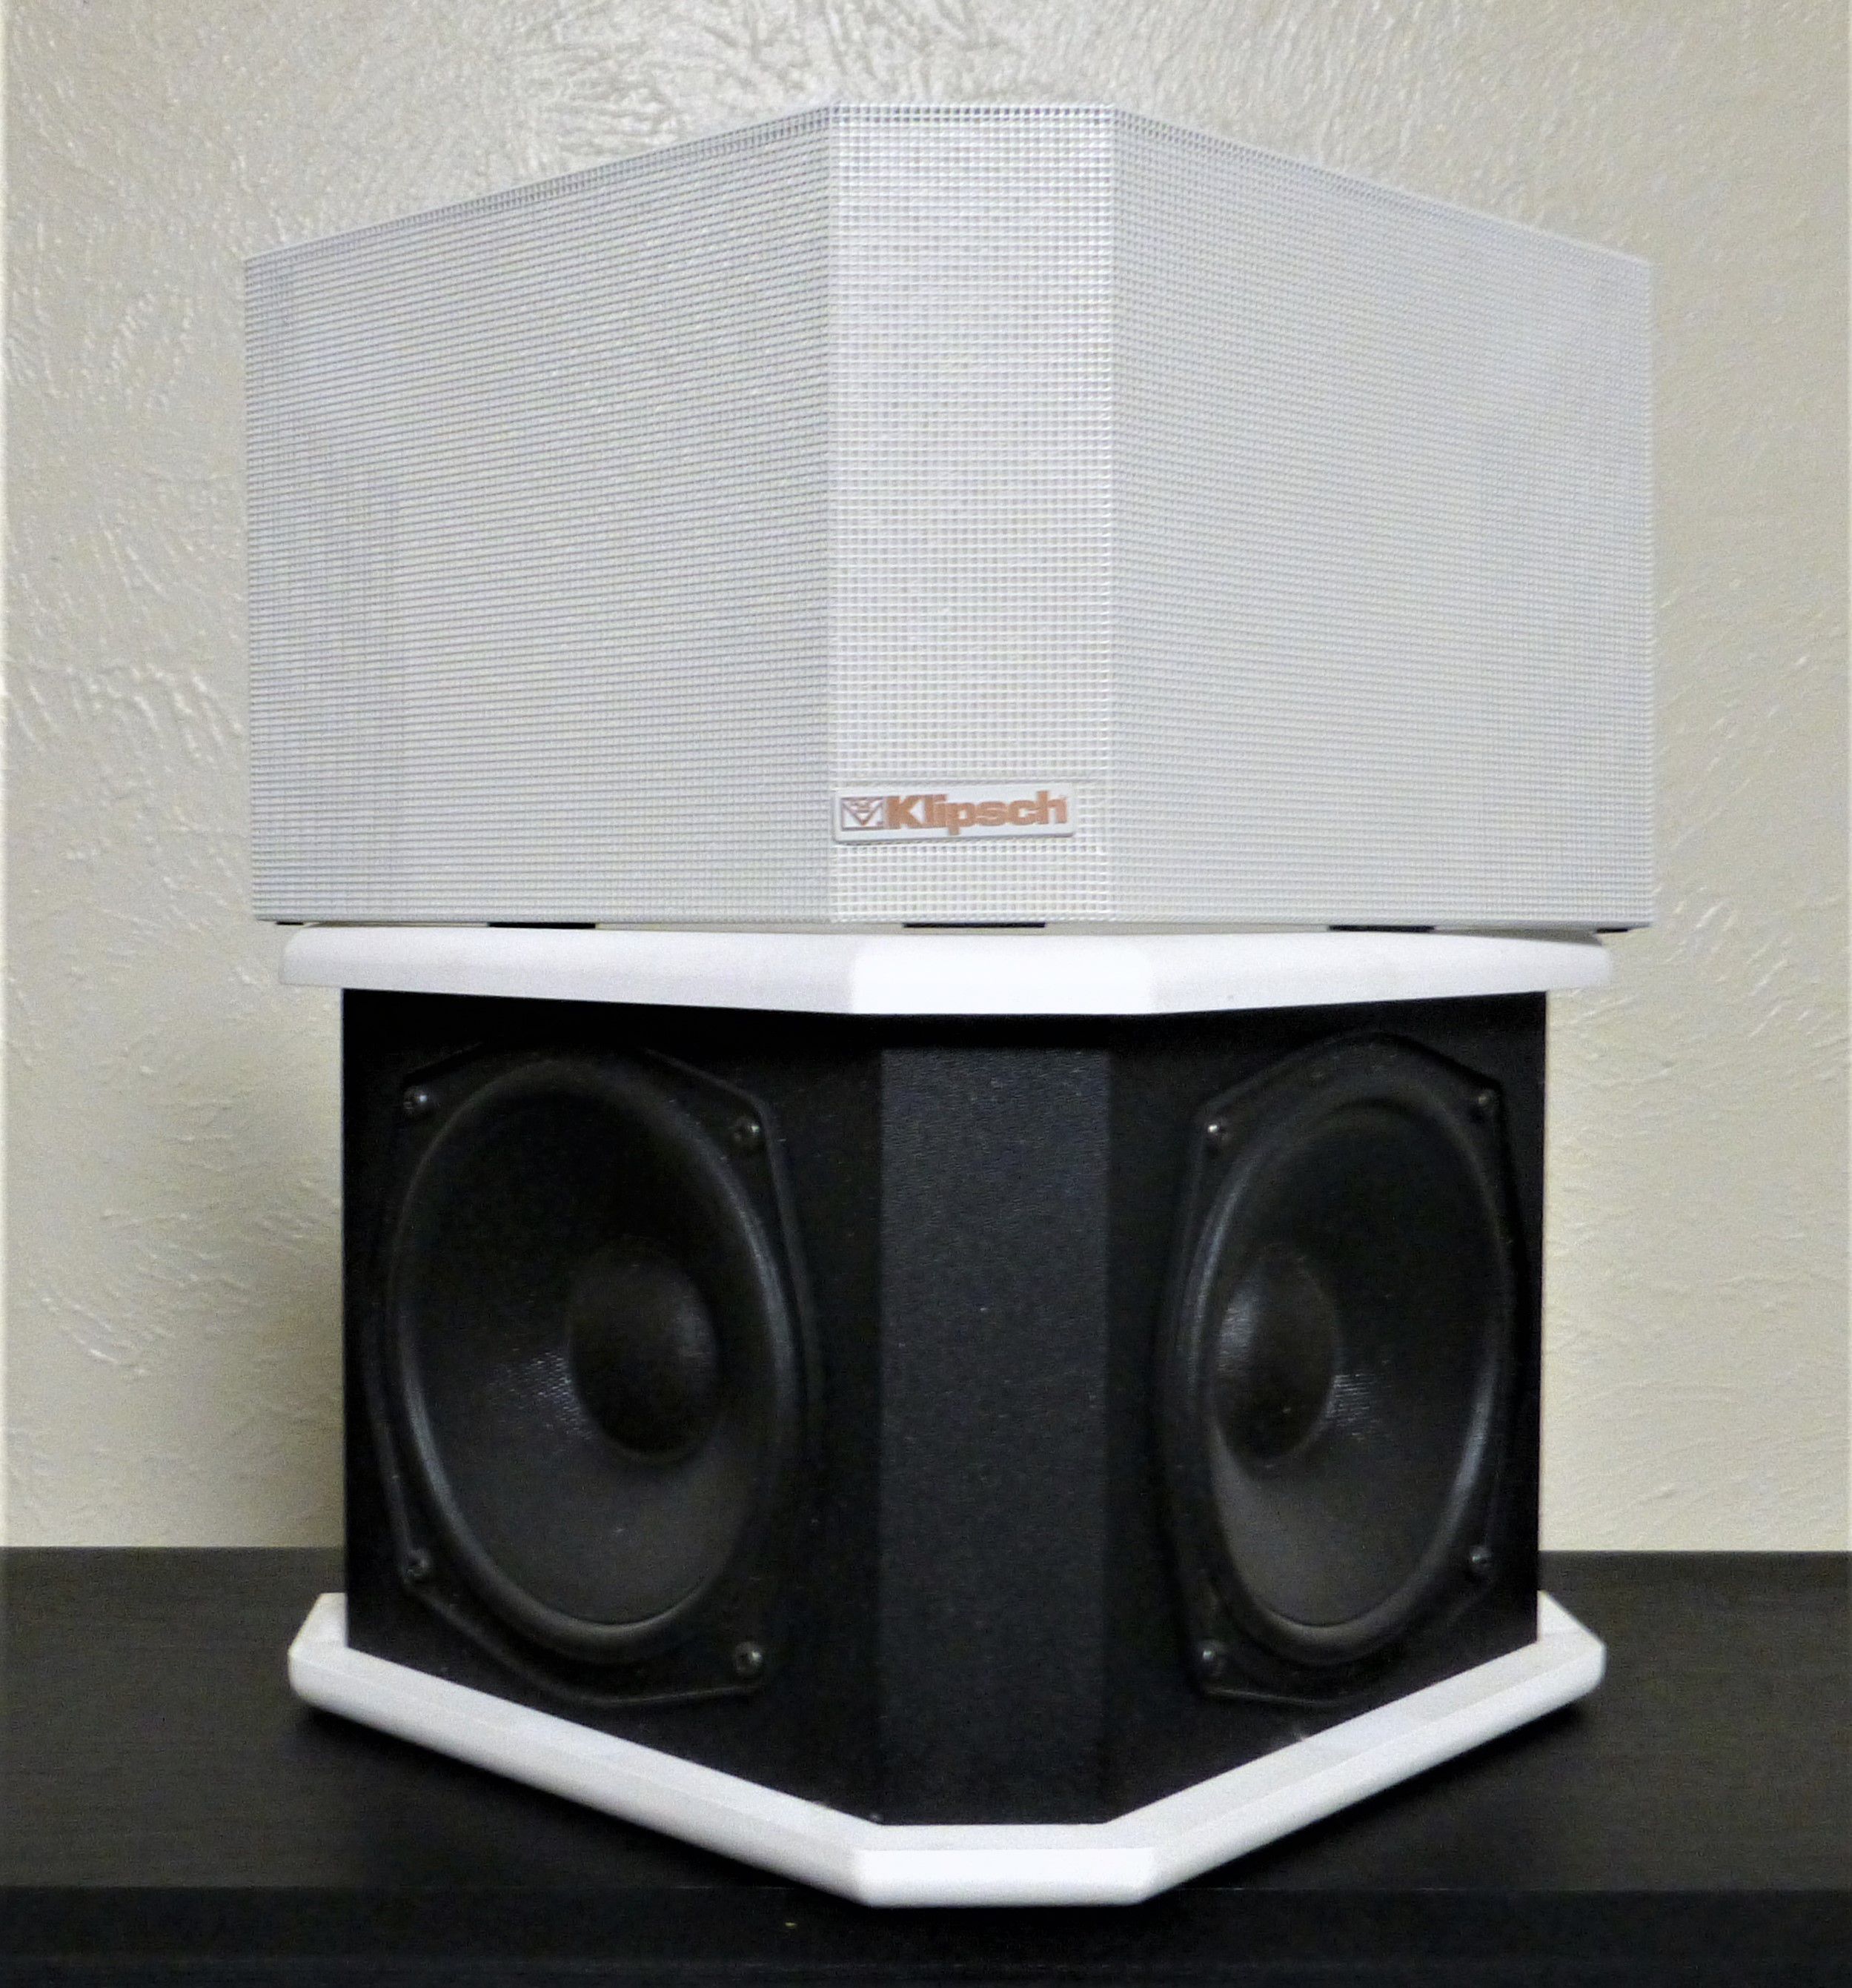 Klipsch Surround Speakers - 320 Watts